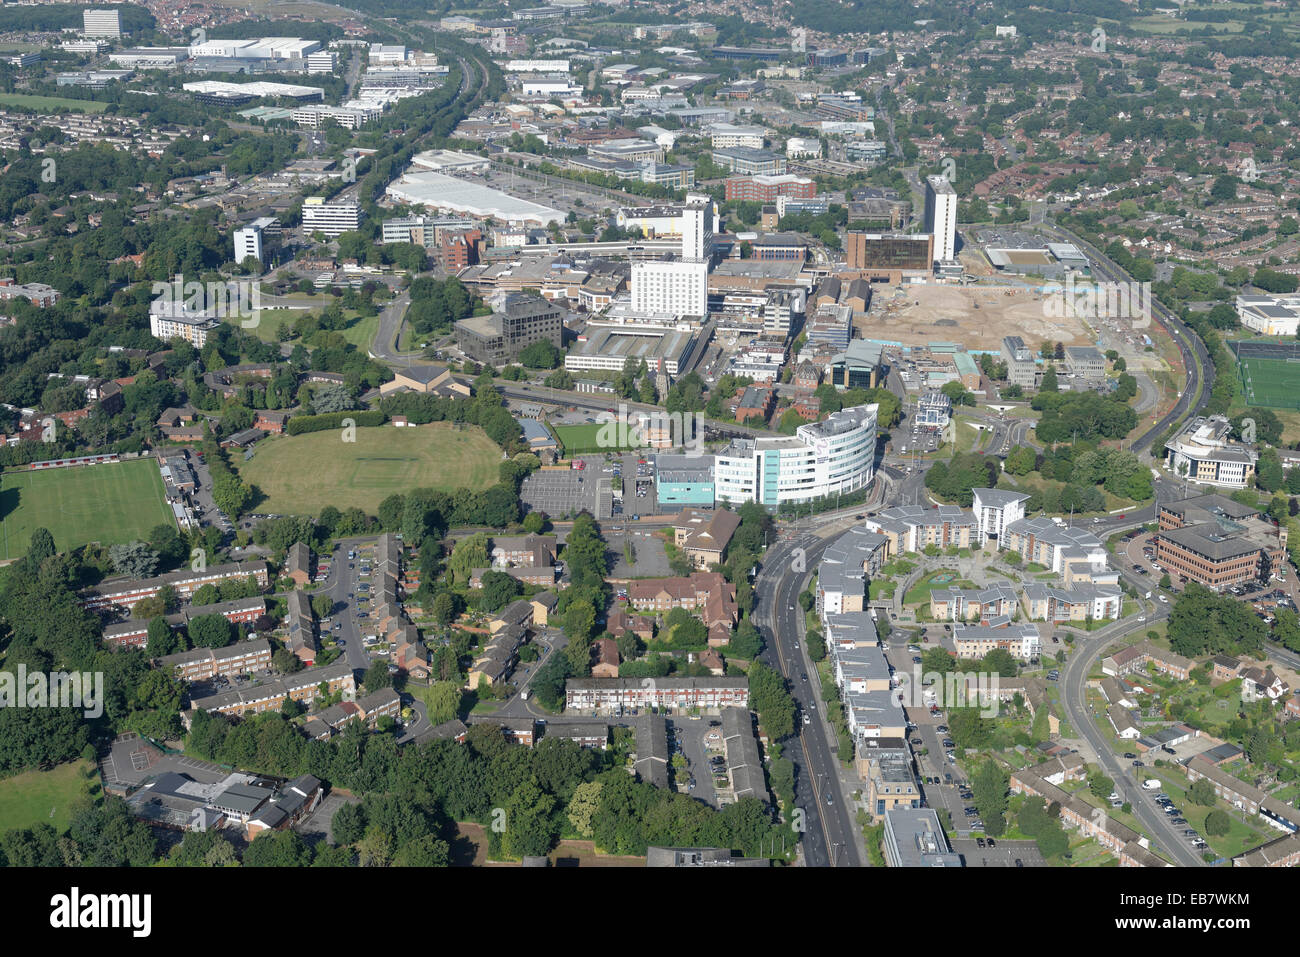 Una vista aérea del centro de Bracknell, Berkshire. Foto de stock